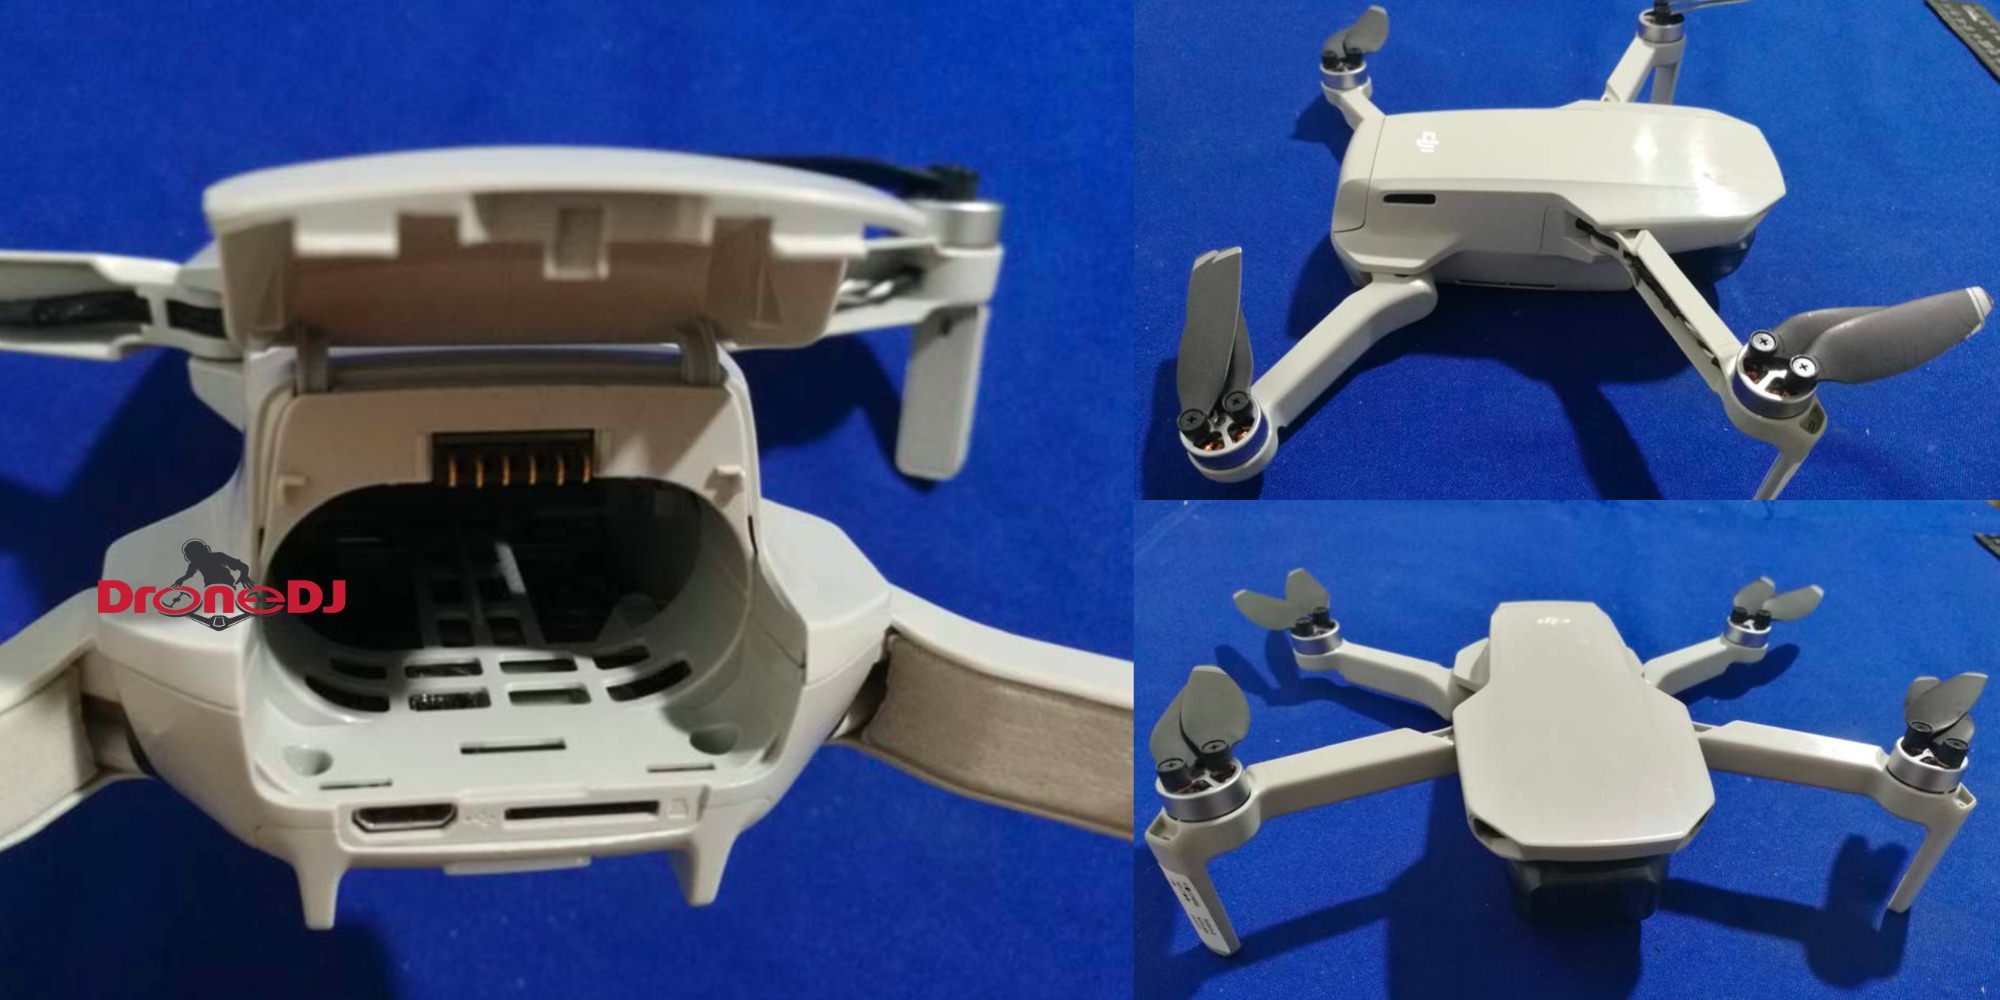 DJI Mavic Mini drone will cost 399 and have a 4k camera